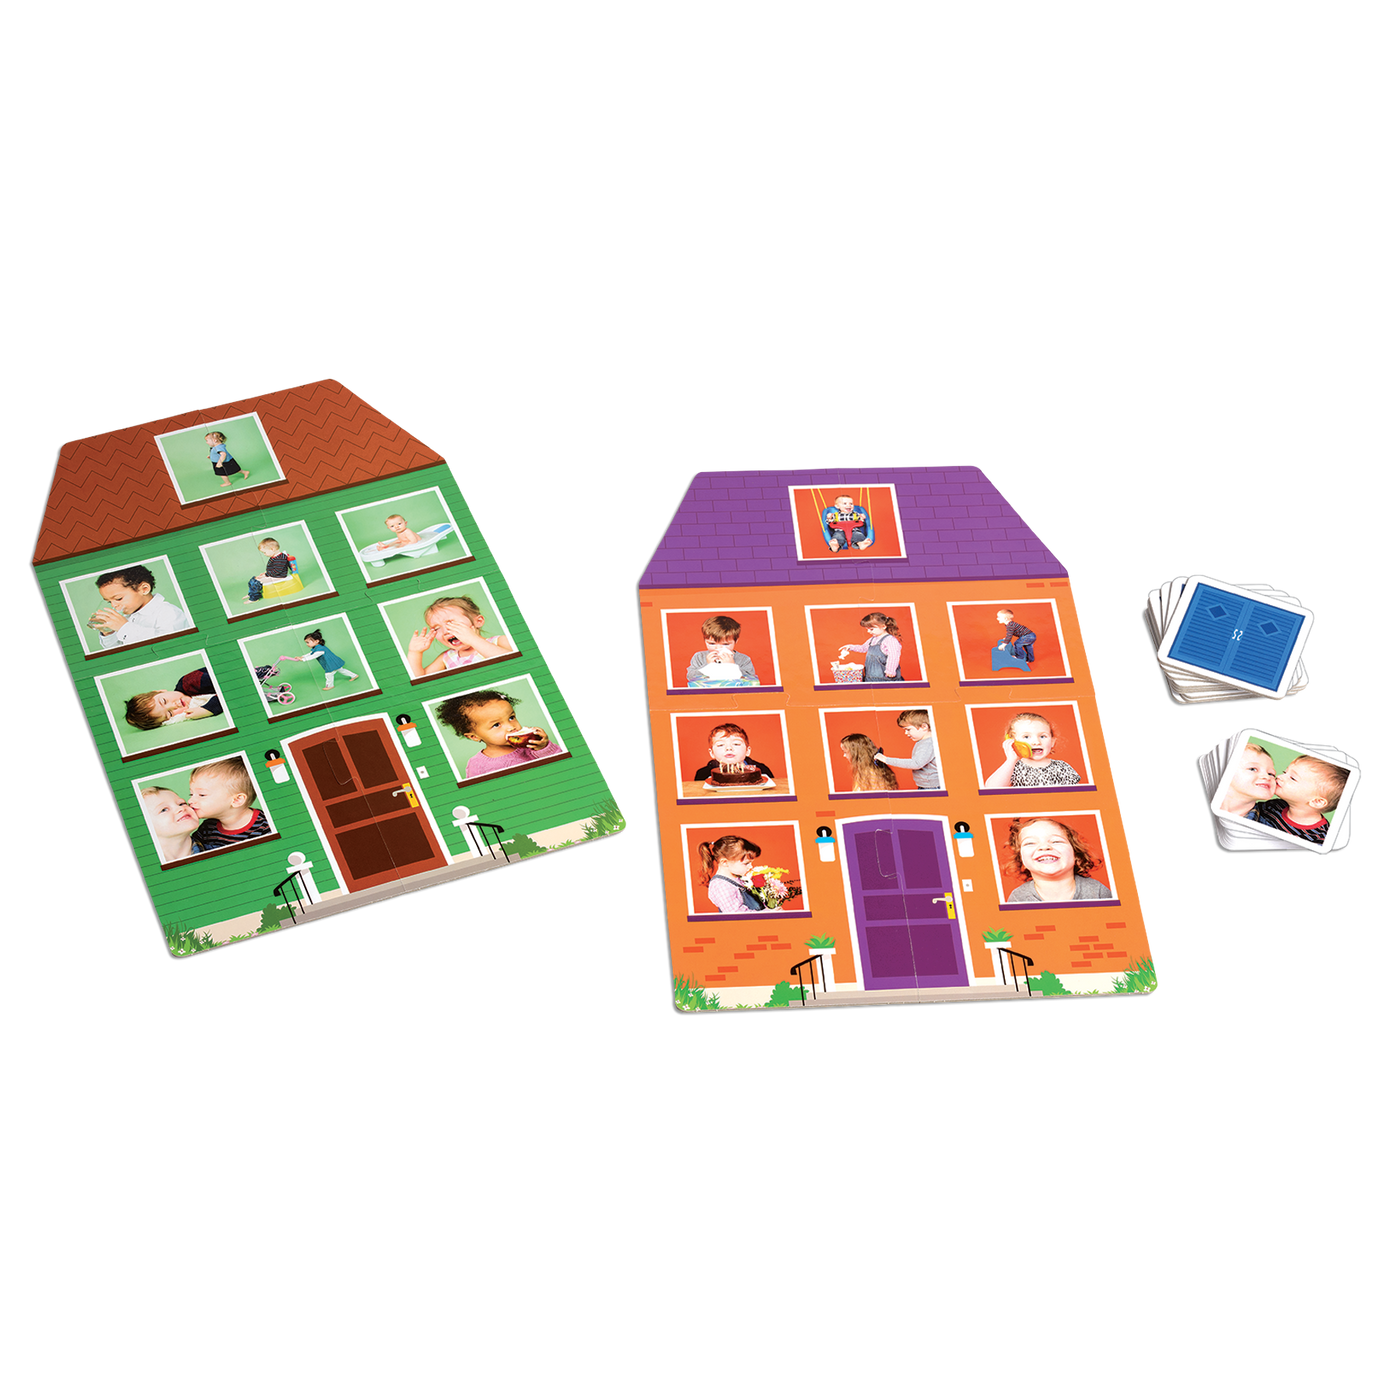 La maison des actions - Composantes du jeu : plateaux de jeu (maisons verte et orange), cartes-fenêtres et cartes d’action